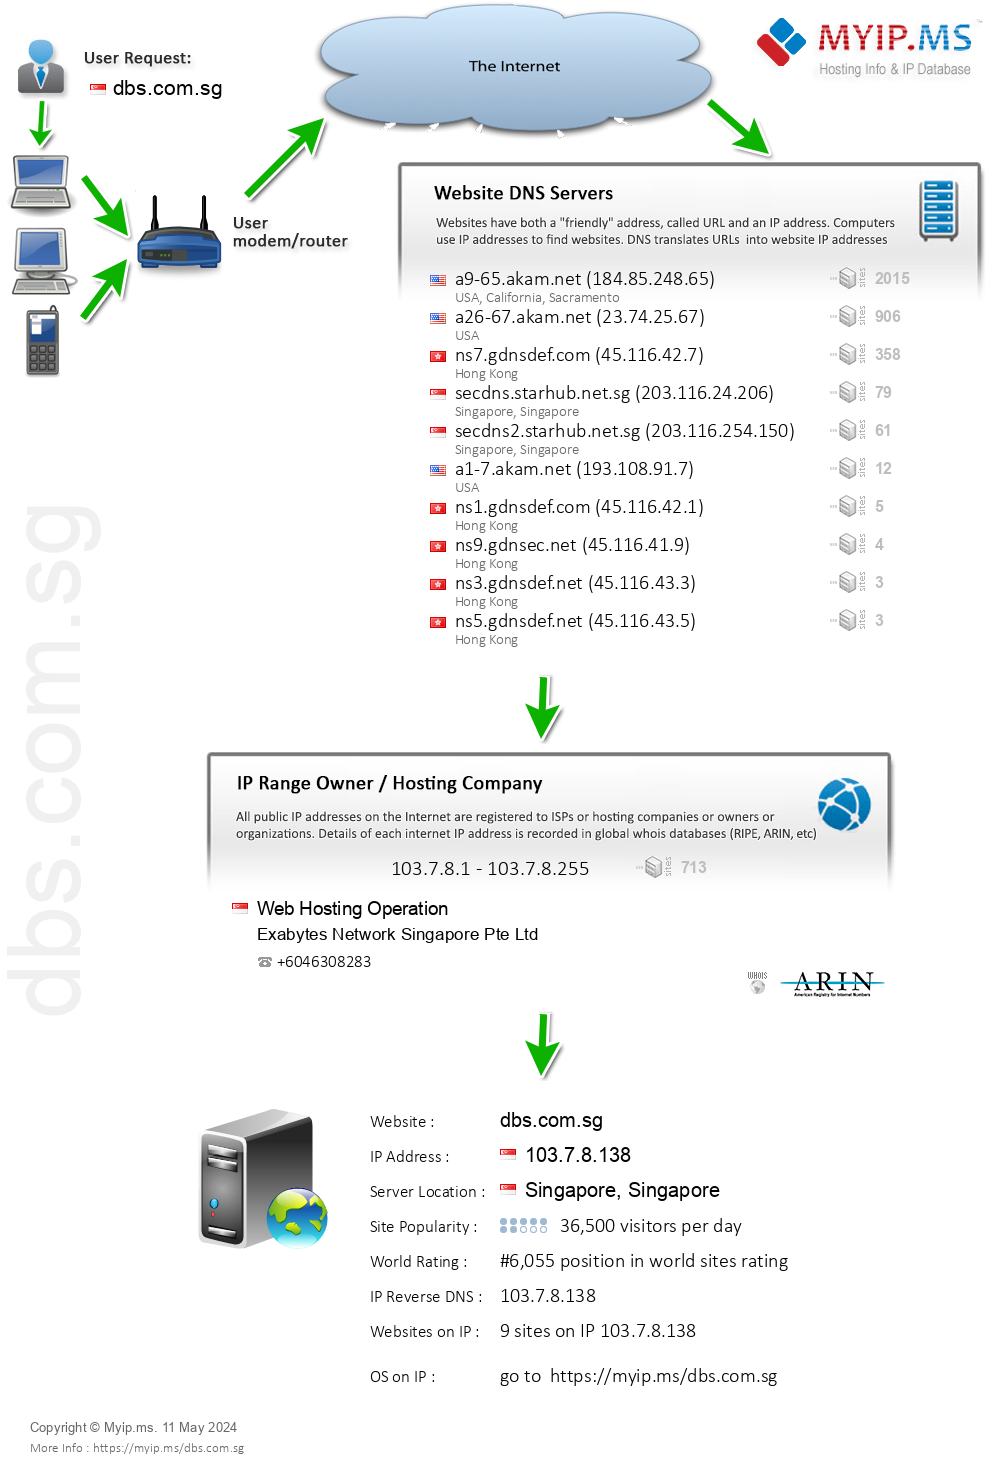 Dbs.com.sg - Website Hosting Visual IP Diagram